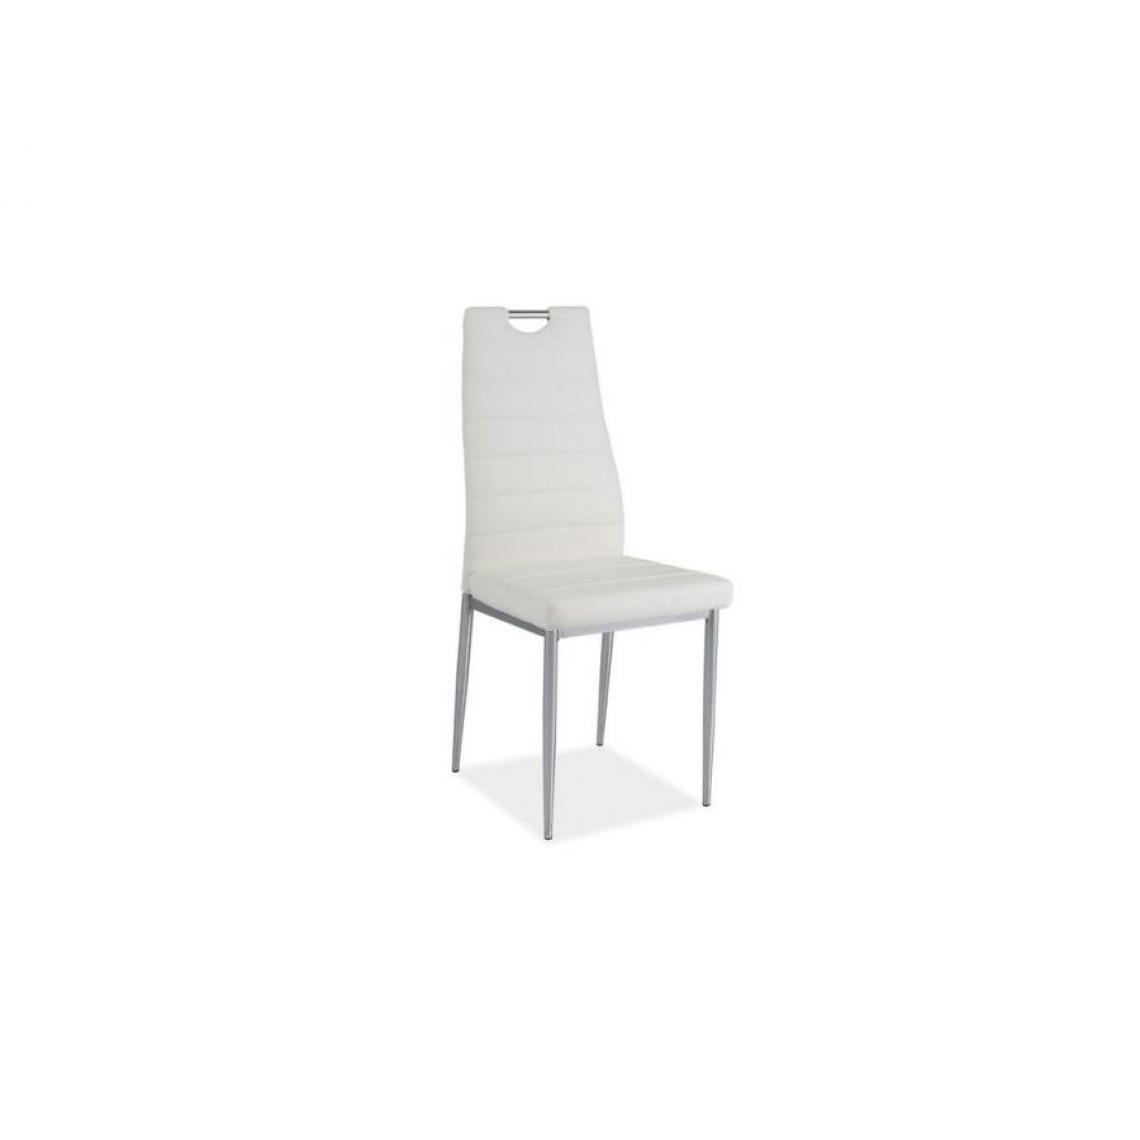 Hucoco - INAYA | Chaise style minimaliste salle à manger bureau | Dimensions : 96x40x38 cm | Rembourrage cuir écologique | Ergonomique - Blanc - Chaises